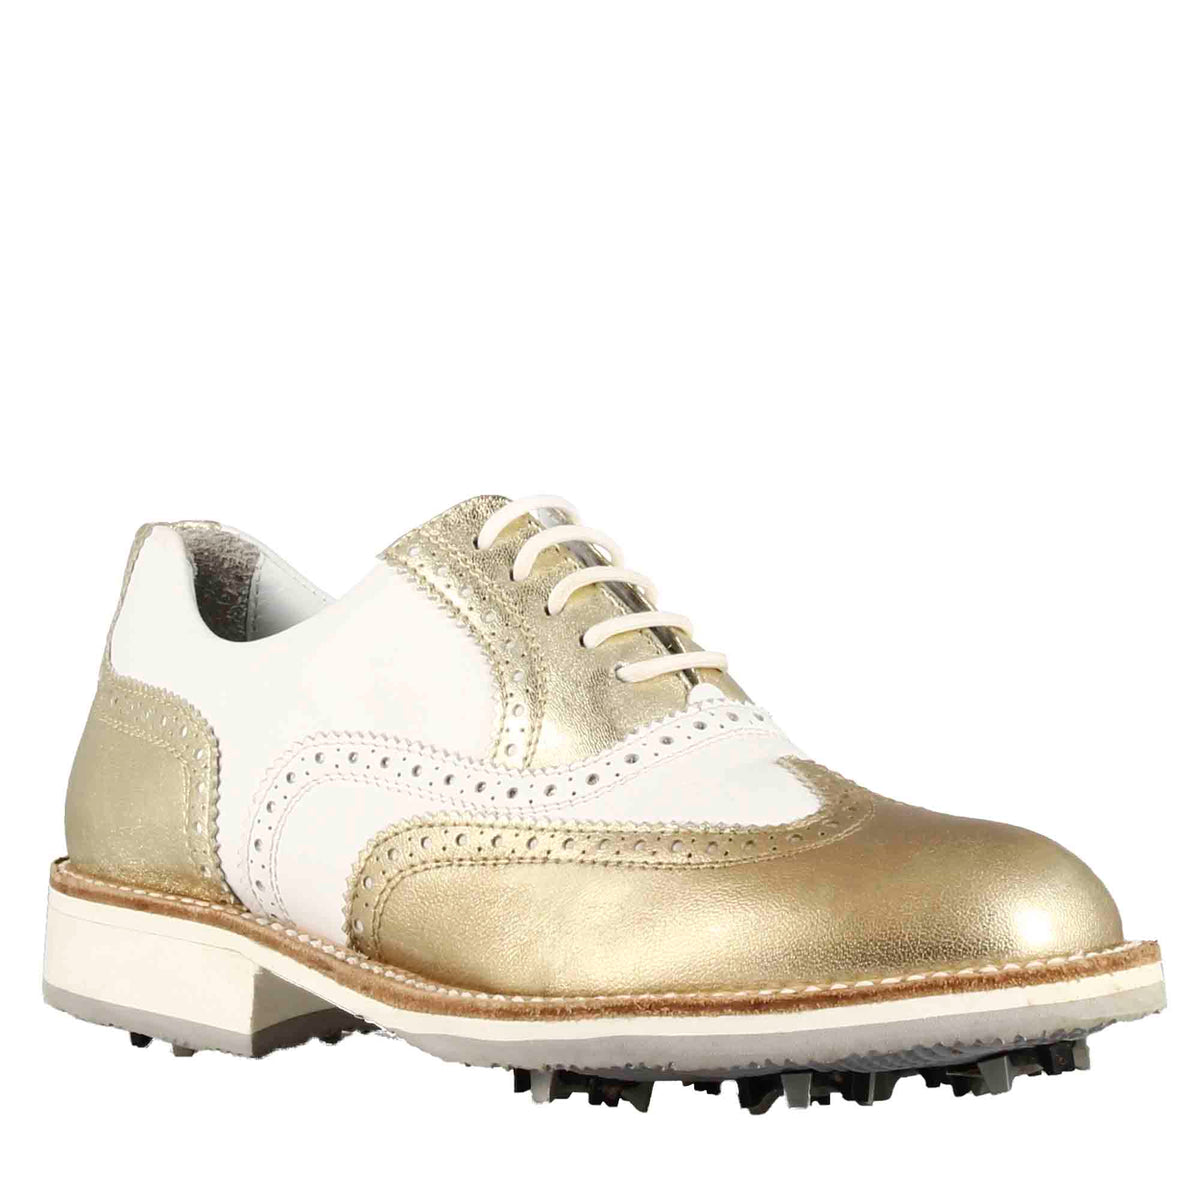 Scarpe da golf donna artigianali in pelle bianca con dettagli colore oro